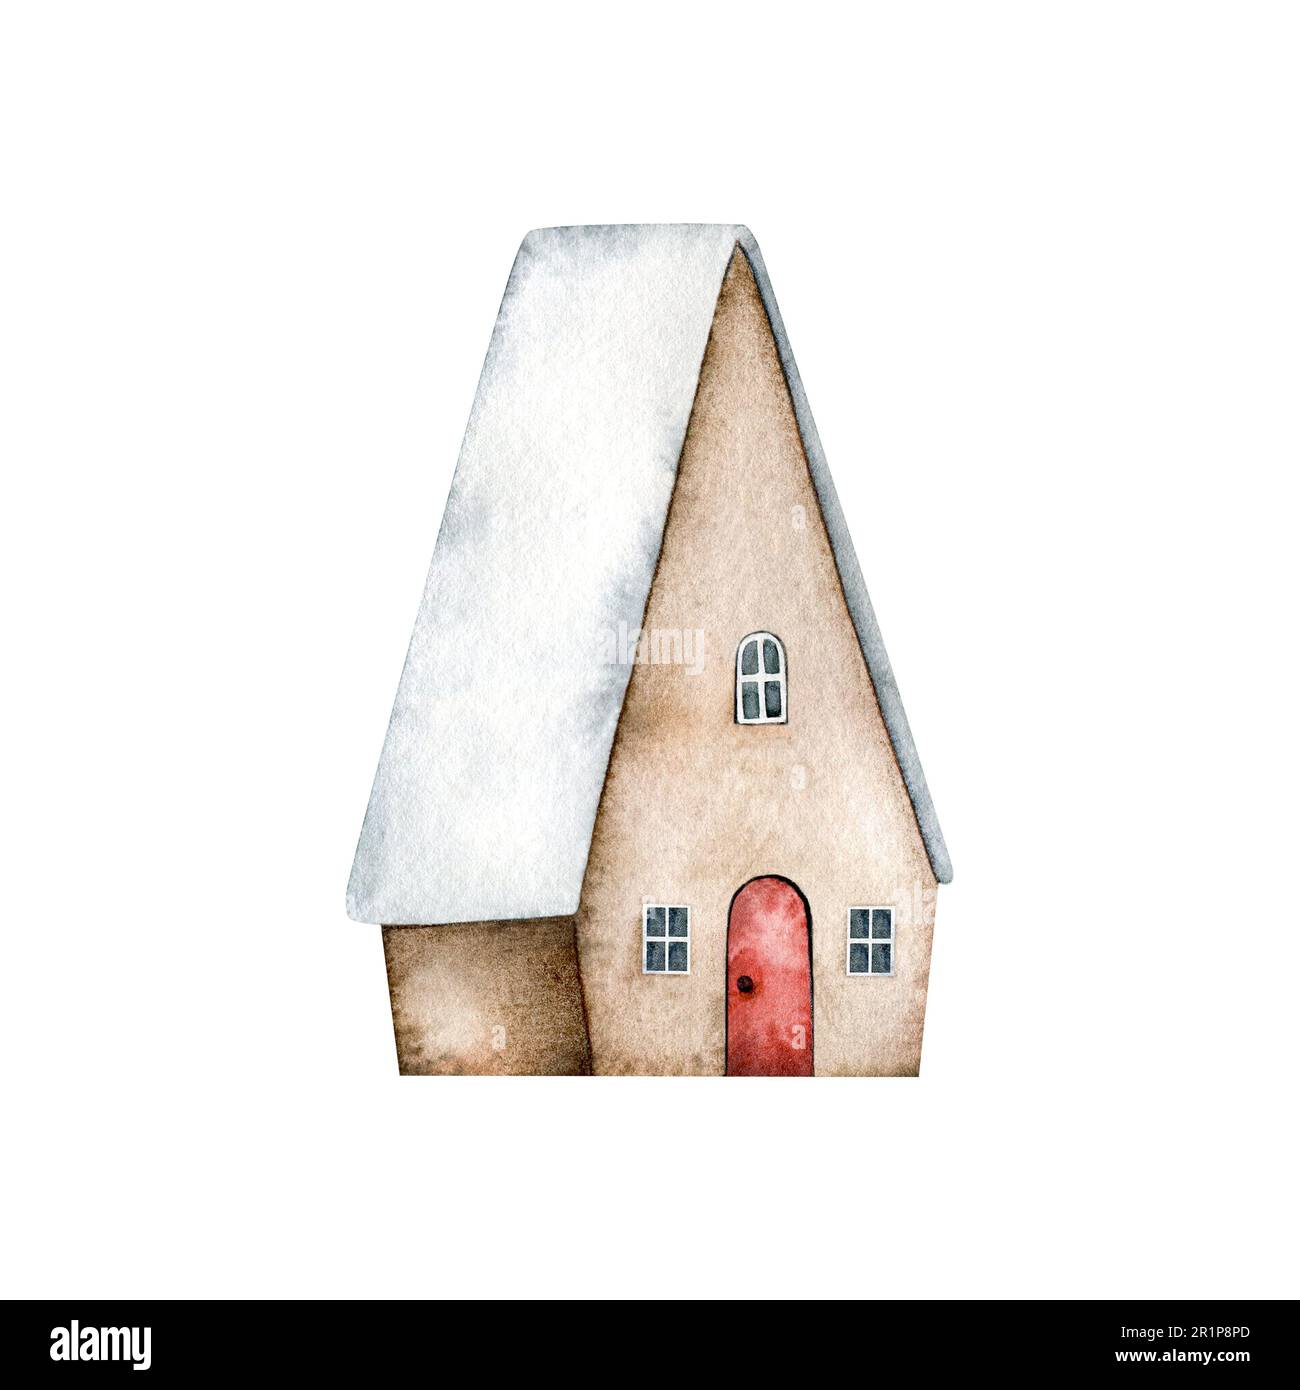 Maison mignonne avec portes rouges, fenêtres et avec de la neige sur le toit isolé sur le fond. Illustration aquarelle dessinée à la main pour carte de Noël, souvenirs Banque D'Images